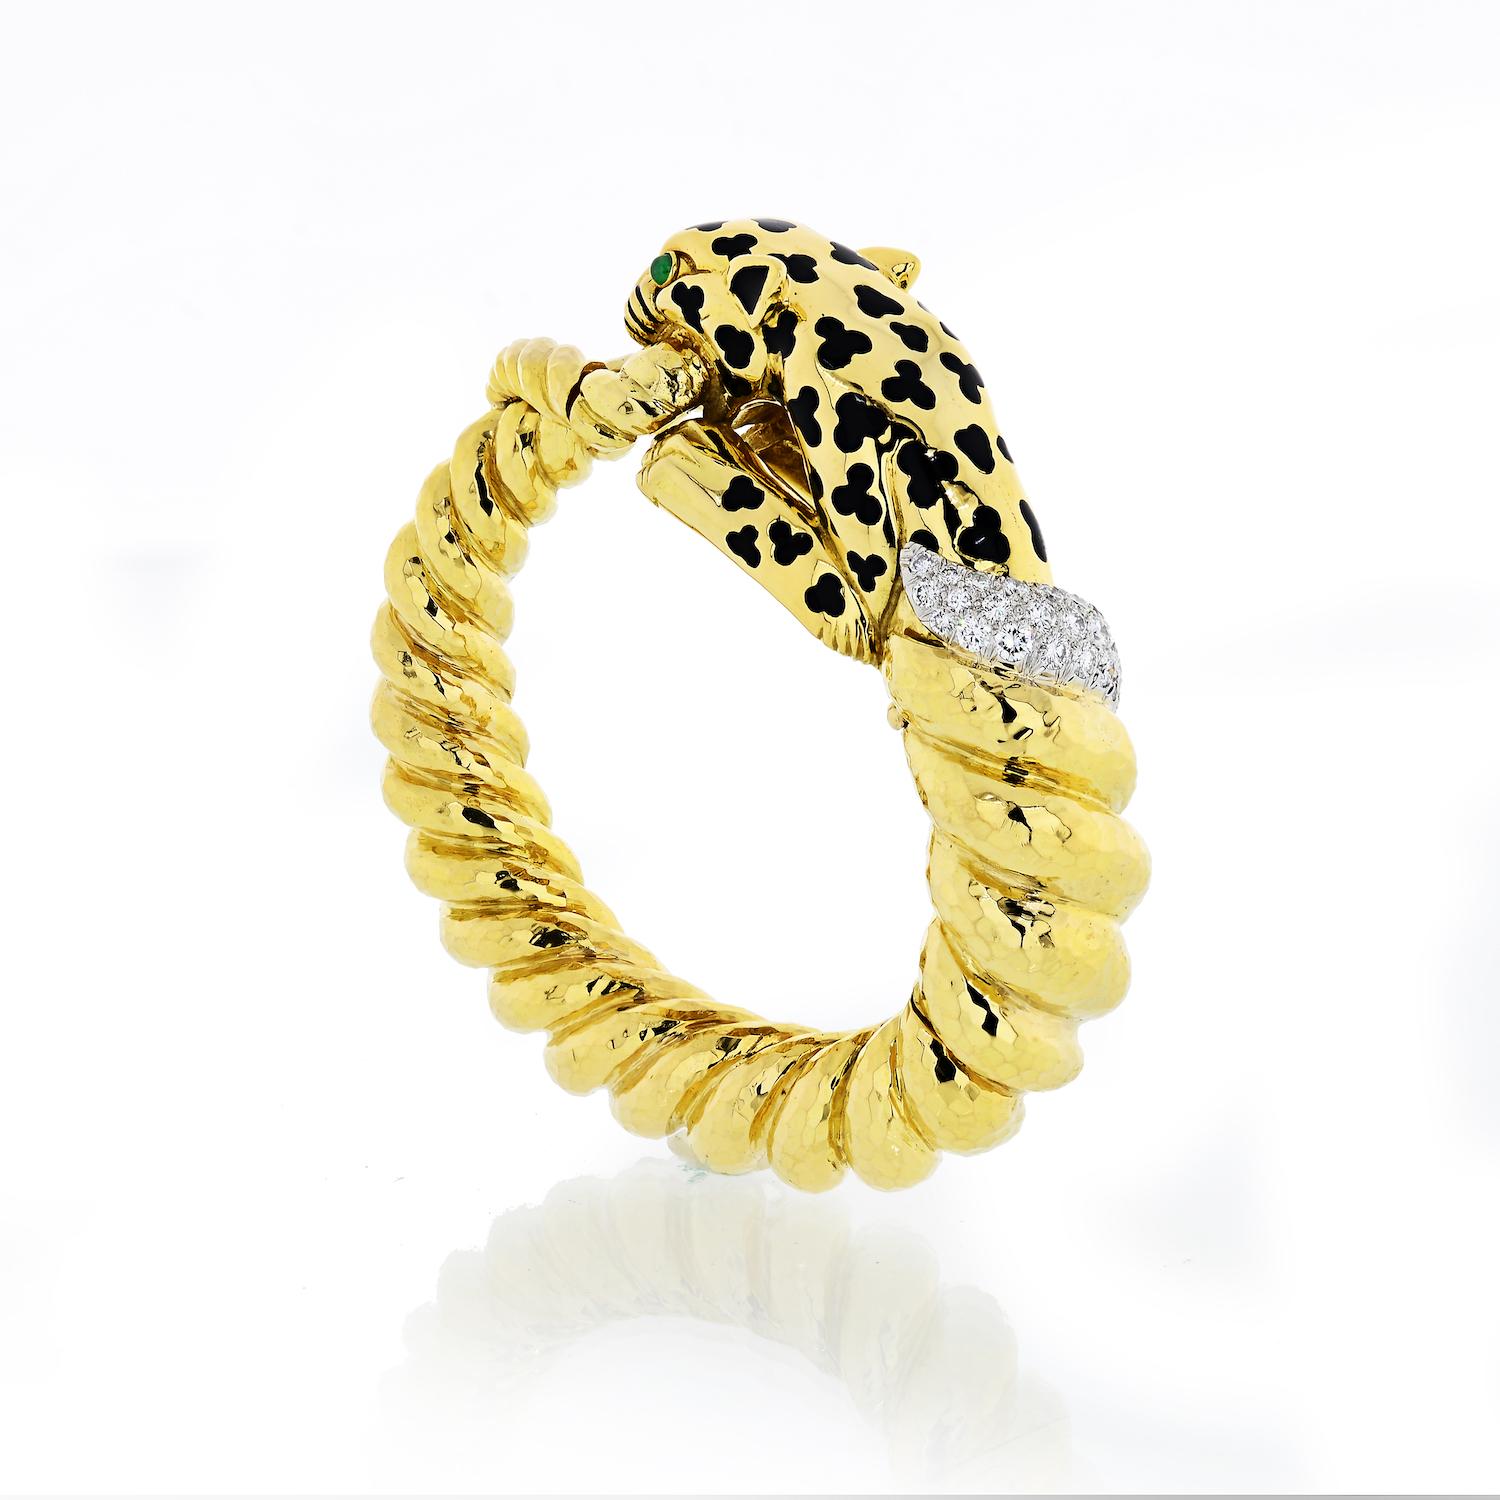 David Webb Gelbgold Leopard in Form eines gedrehten Armreifs, verziert mit schwarzen Emaillepunkten, Cabochon-Smaragdaugen und Diamanten in Pavé-Fassung.

Das Leopard-Armband ist aus 18 Karat Gelbgold und Platin gefertigt. 

Gesamtgewicht der